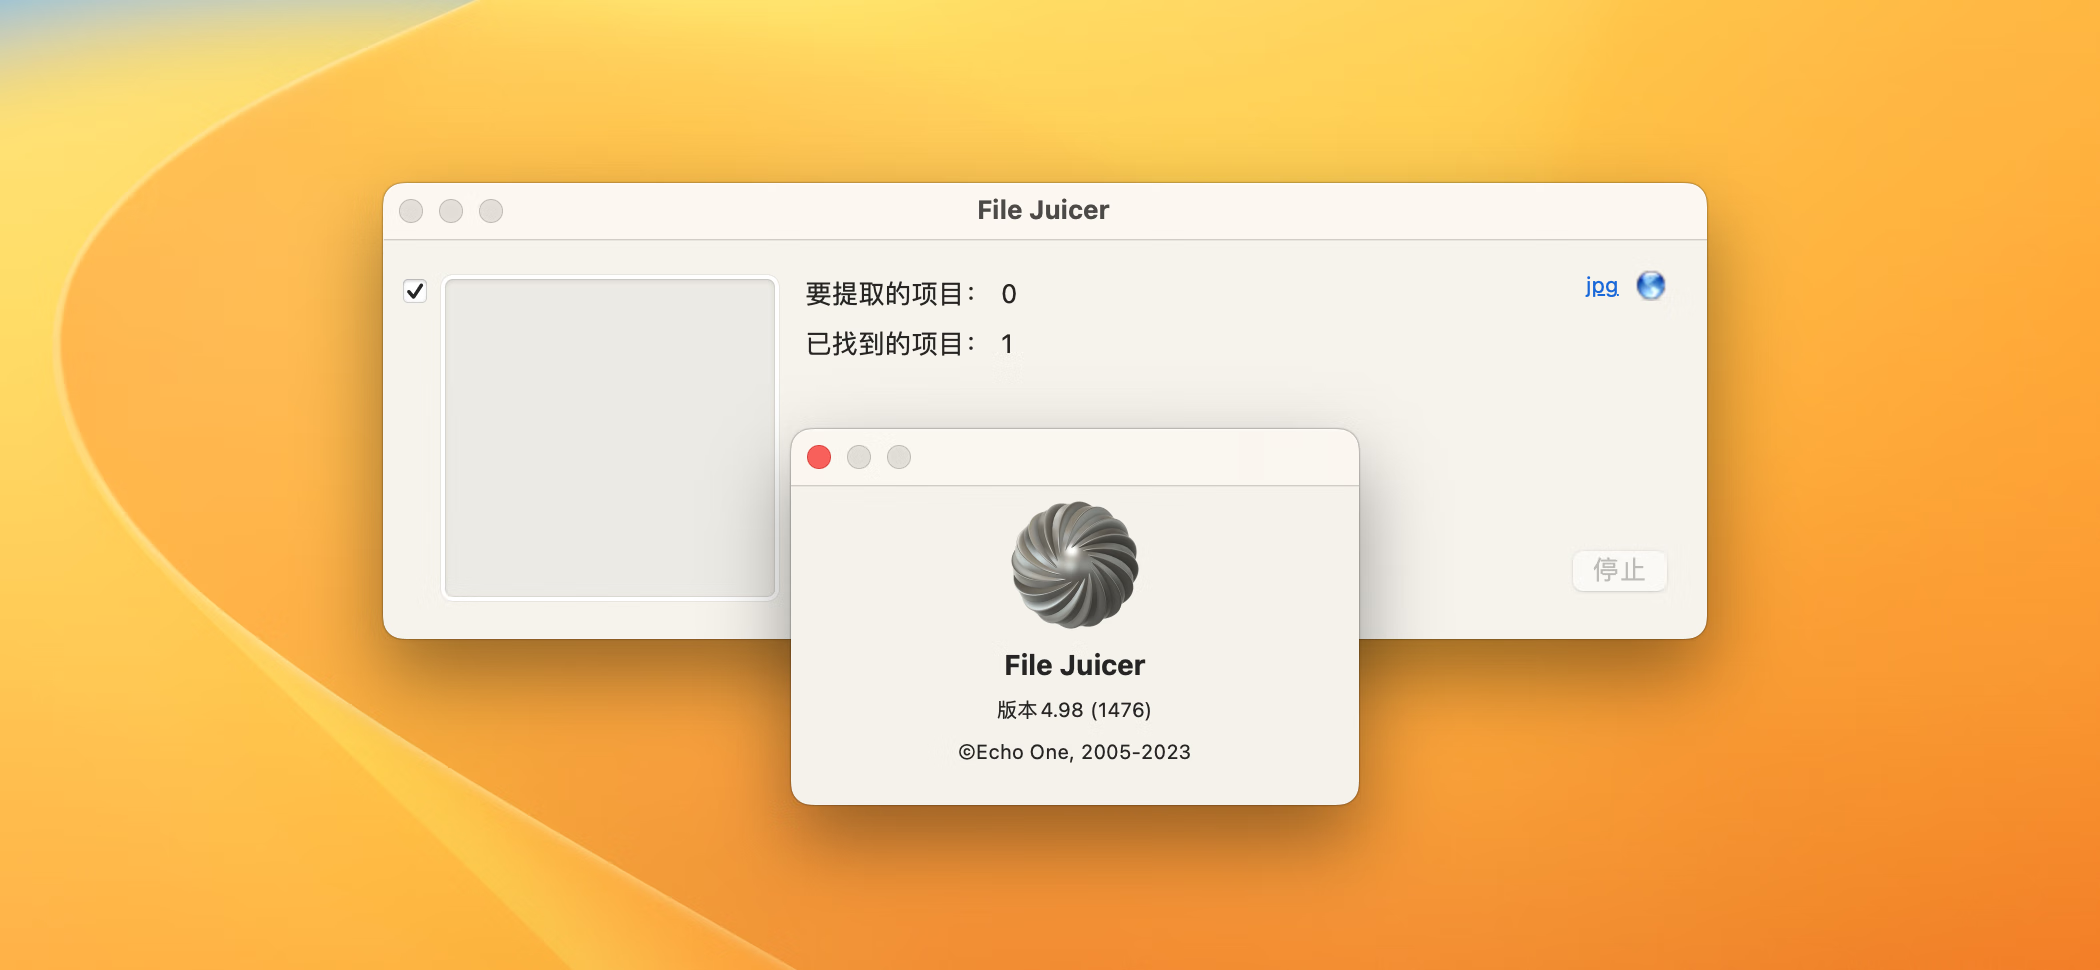 File Juicer for Mac v4.98(1476) 中文破解版 文件内容提取工具